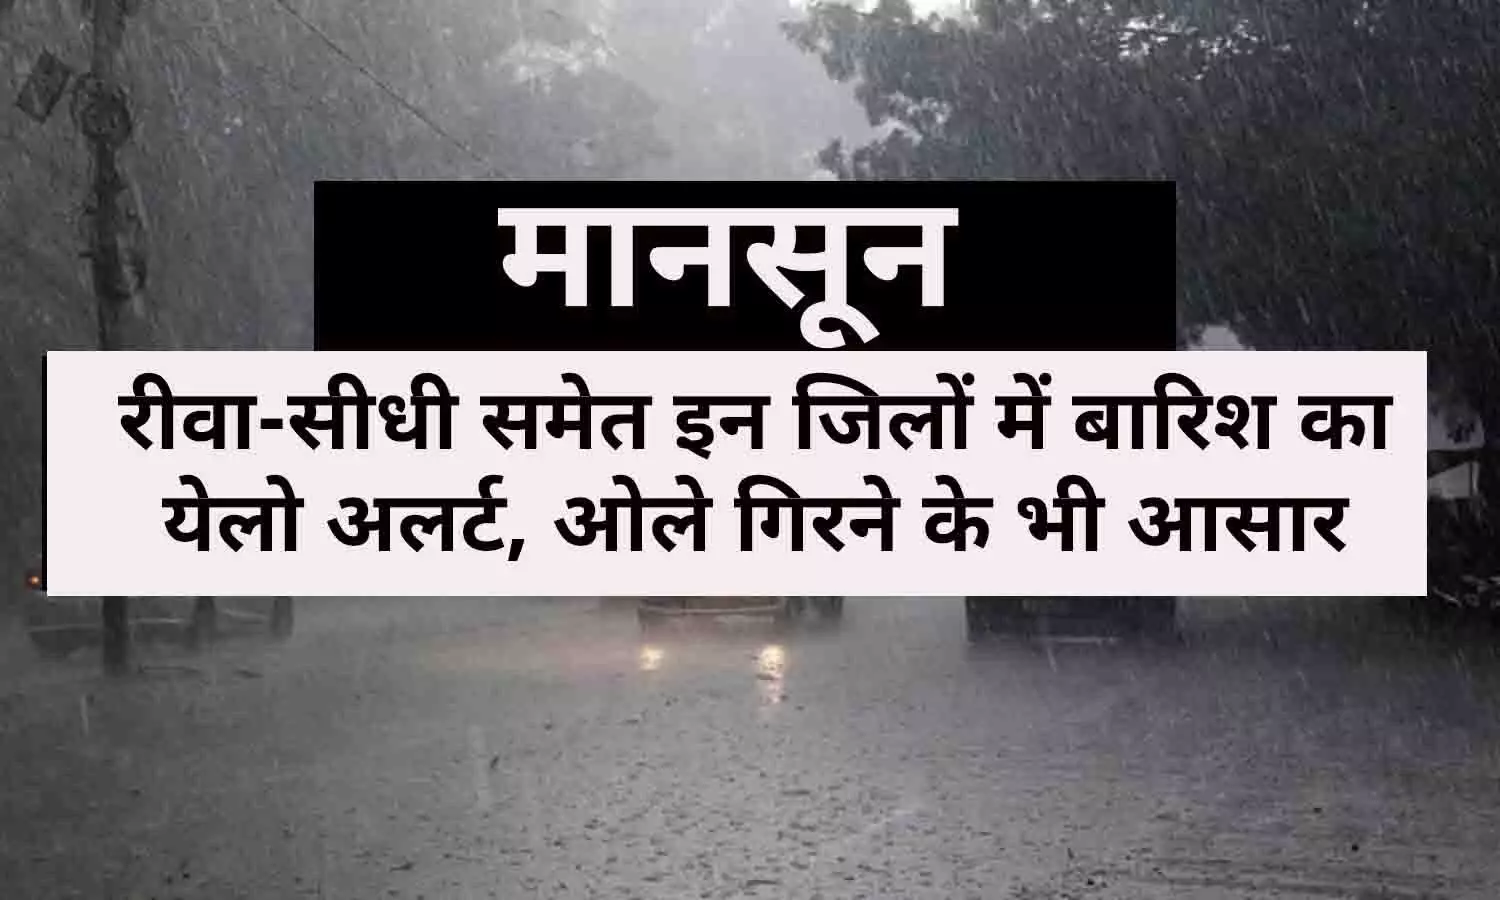 Rain Alert In MP Today: रीवा-सीधी समेत इन जिलों में बारिश का येलो अलर्ट, ओले गिरने के भी आसार, चेक करे लिस्ट